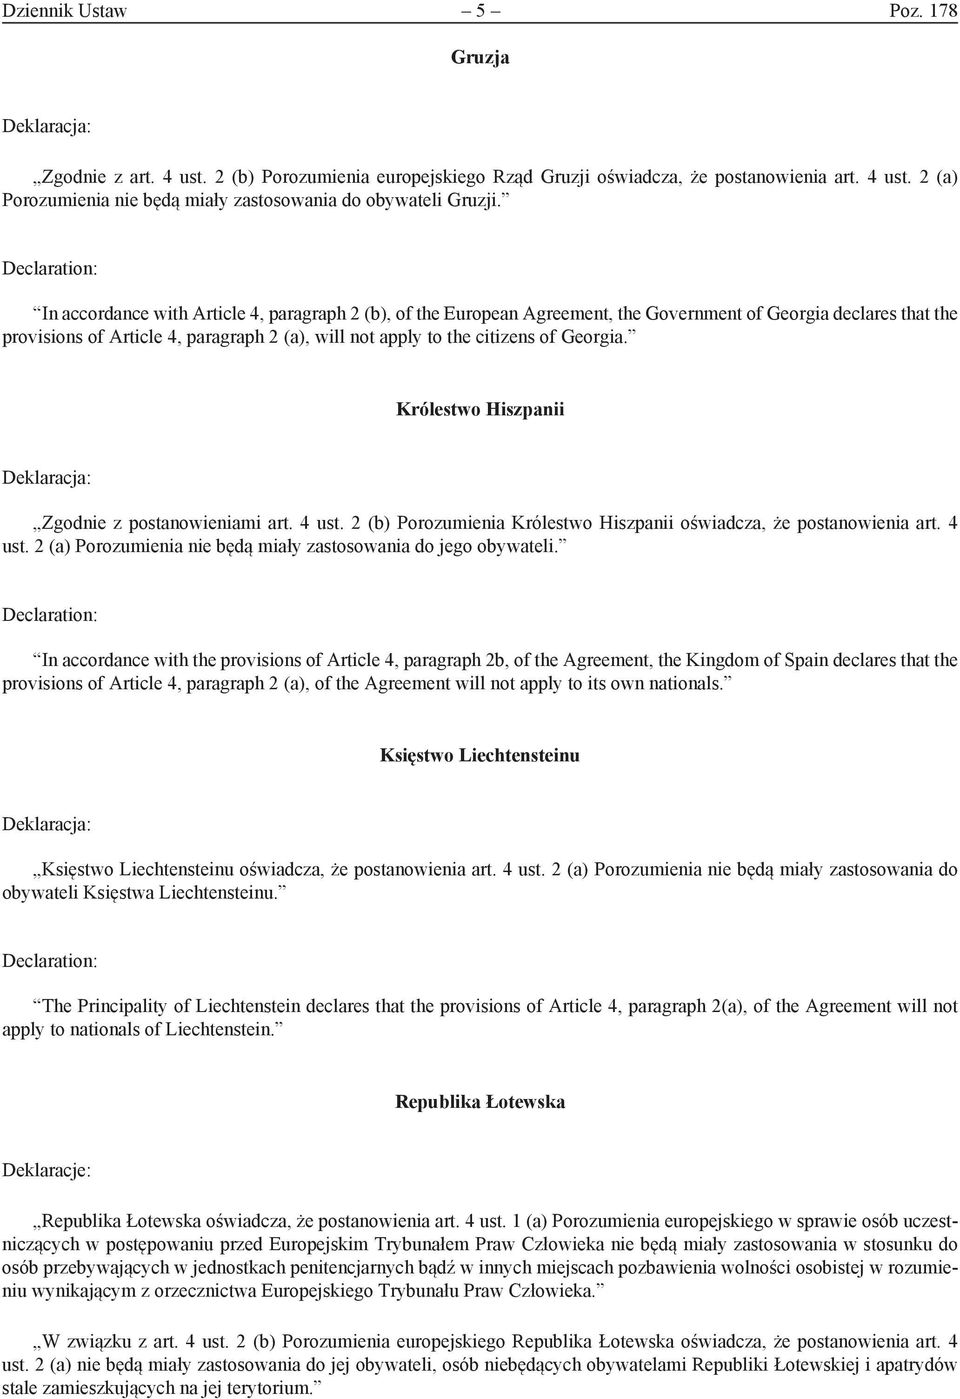 Georgia. Królestwo Hiszpanii Zgodnie z postanowieniami art. 4 ust. 2 (b) Porozumienia Królestwo Hiszpanii oświadcza, że postanowienia art. 4 ust. 2 (a) Porozumienia nie będą miały zastosowania do jego obywateli.